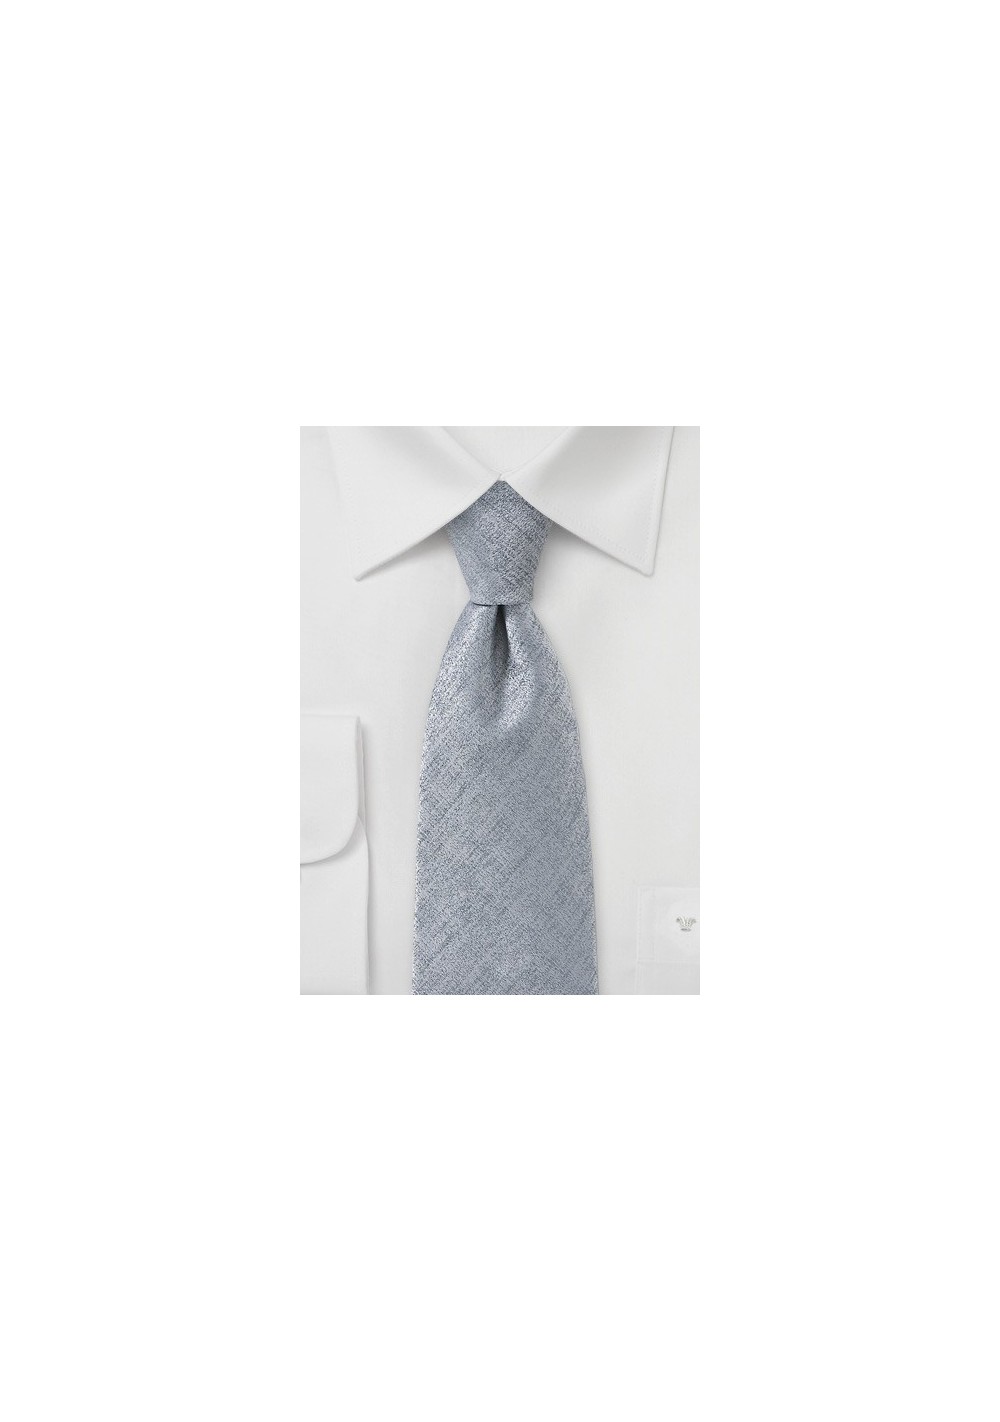 Handsome Silver Necktie